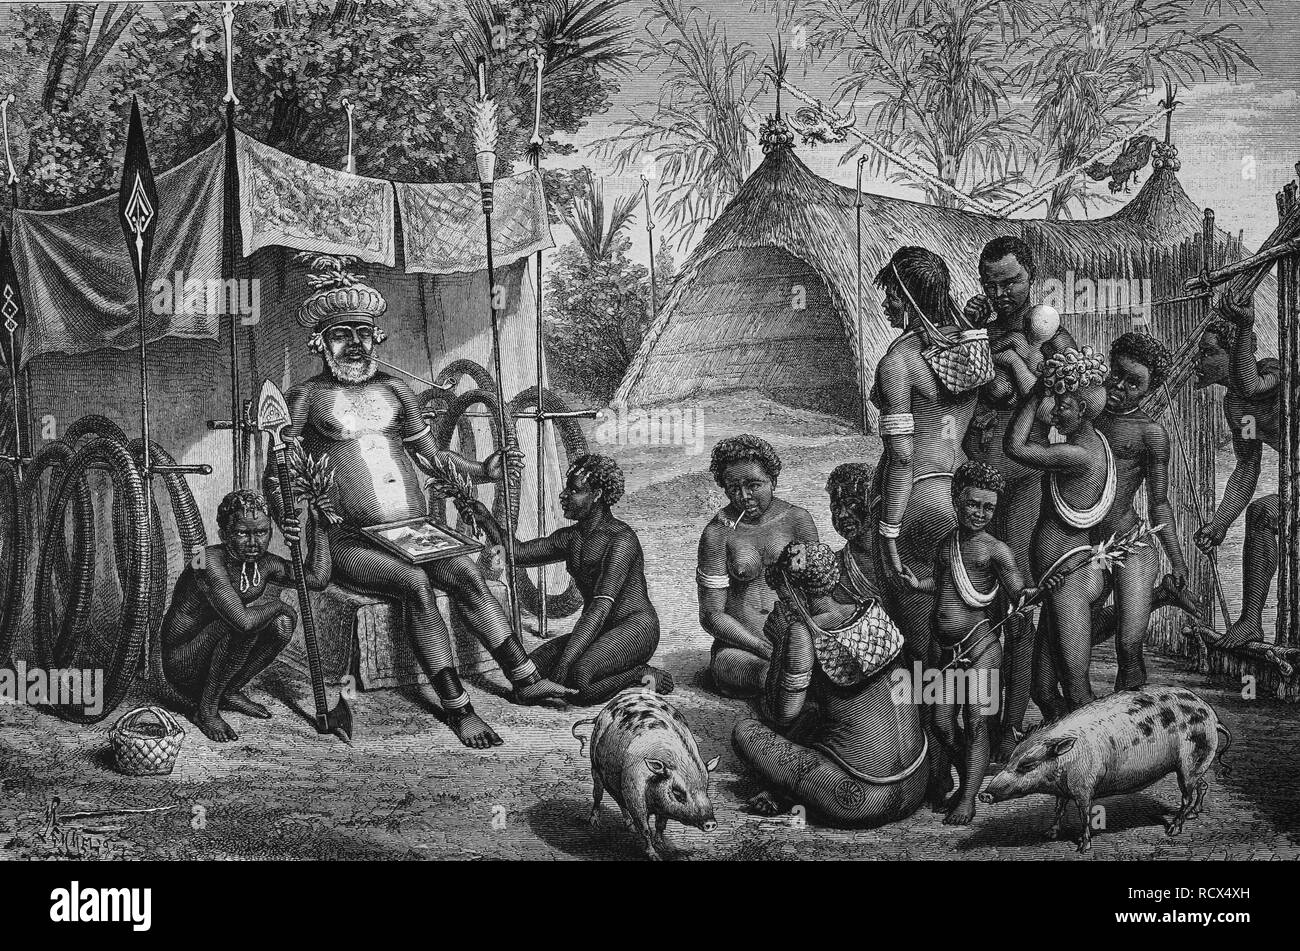 Beerdigung in New Britain, Teil von Melanesien, gehört politisch zu Papua-Neuguinea, Holzschnitt, historische Gravuren, 1880 Stockfoto